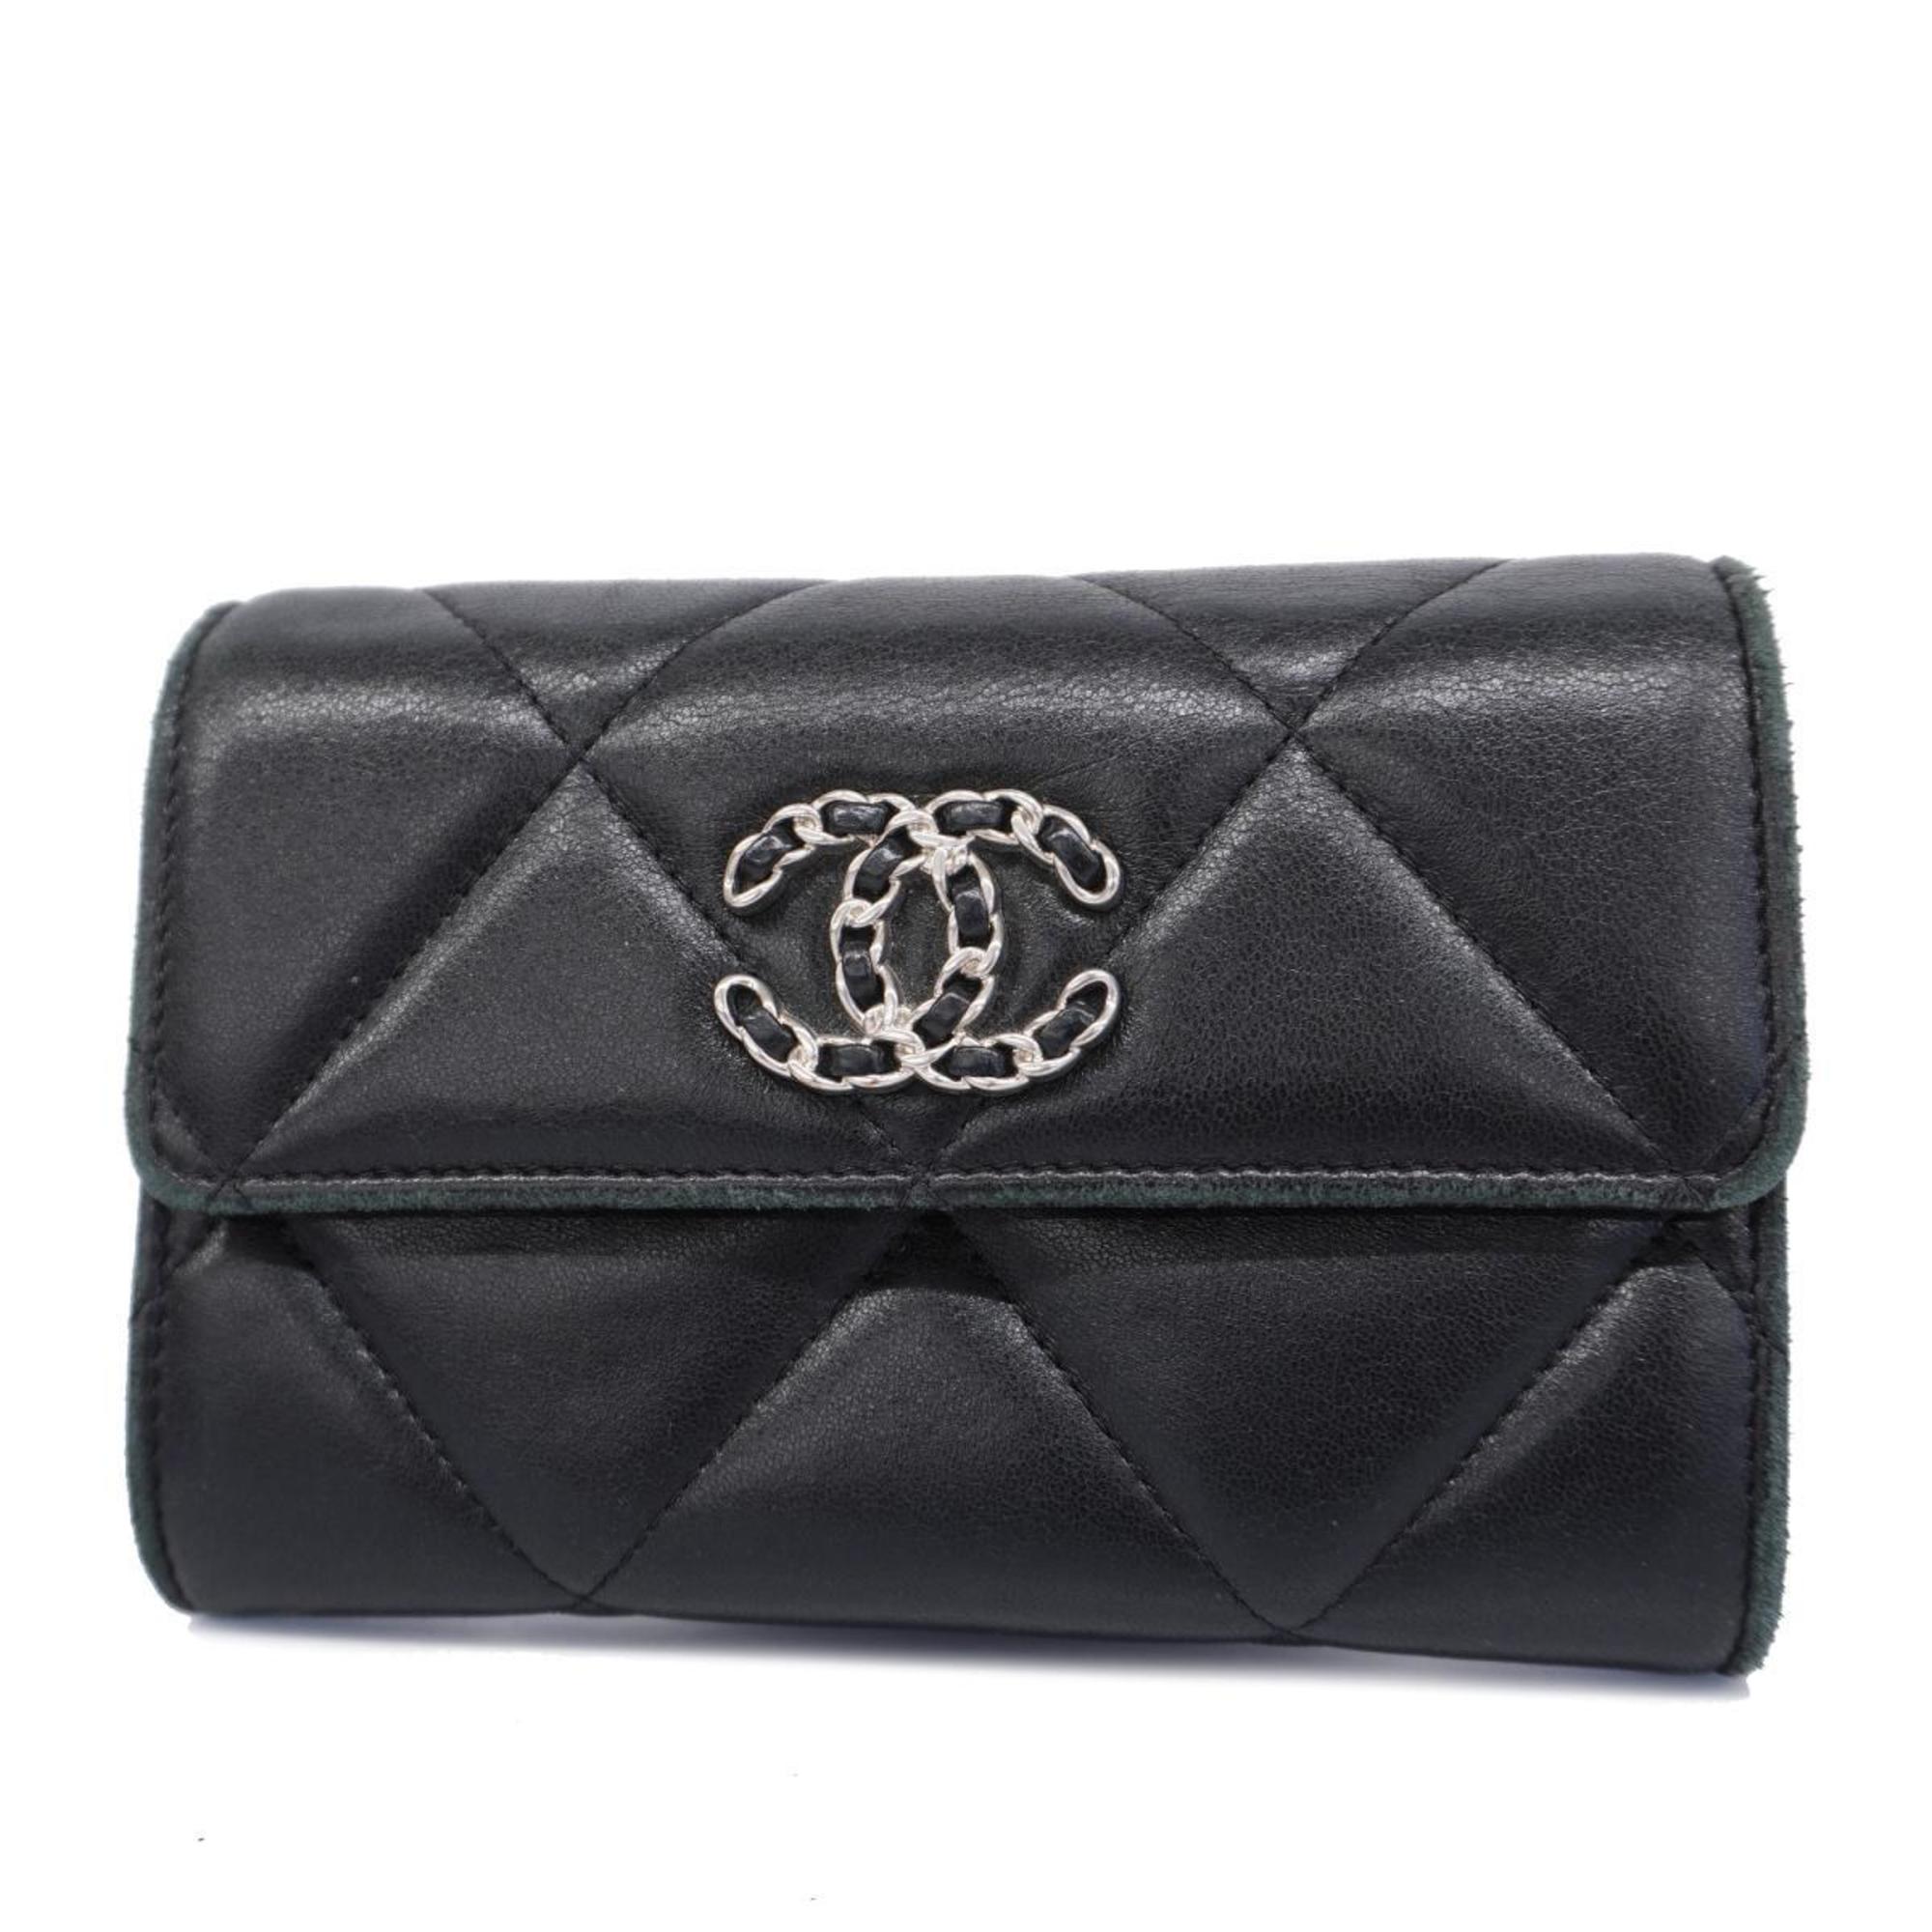 Chanel Wallet Matelasse 19 Lambskin Black Women's